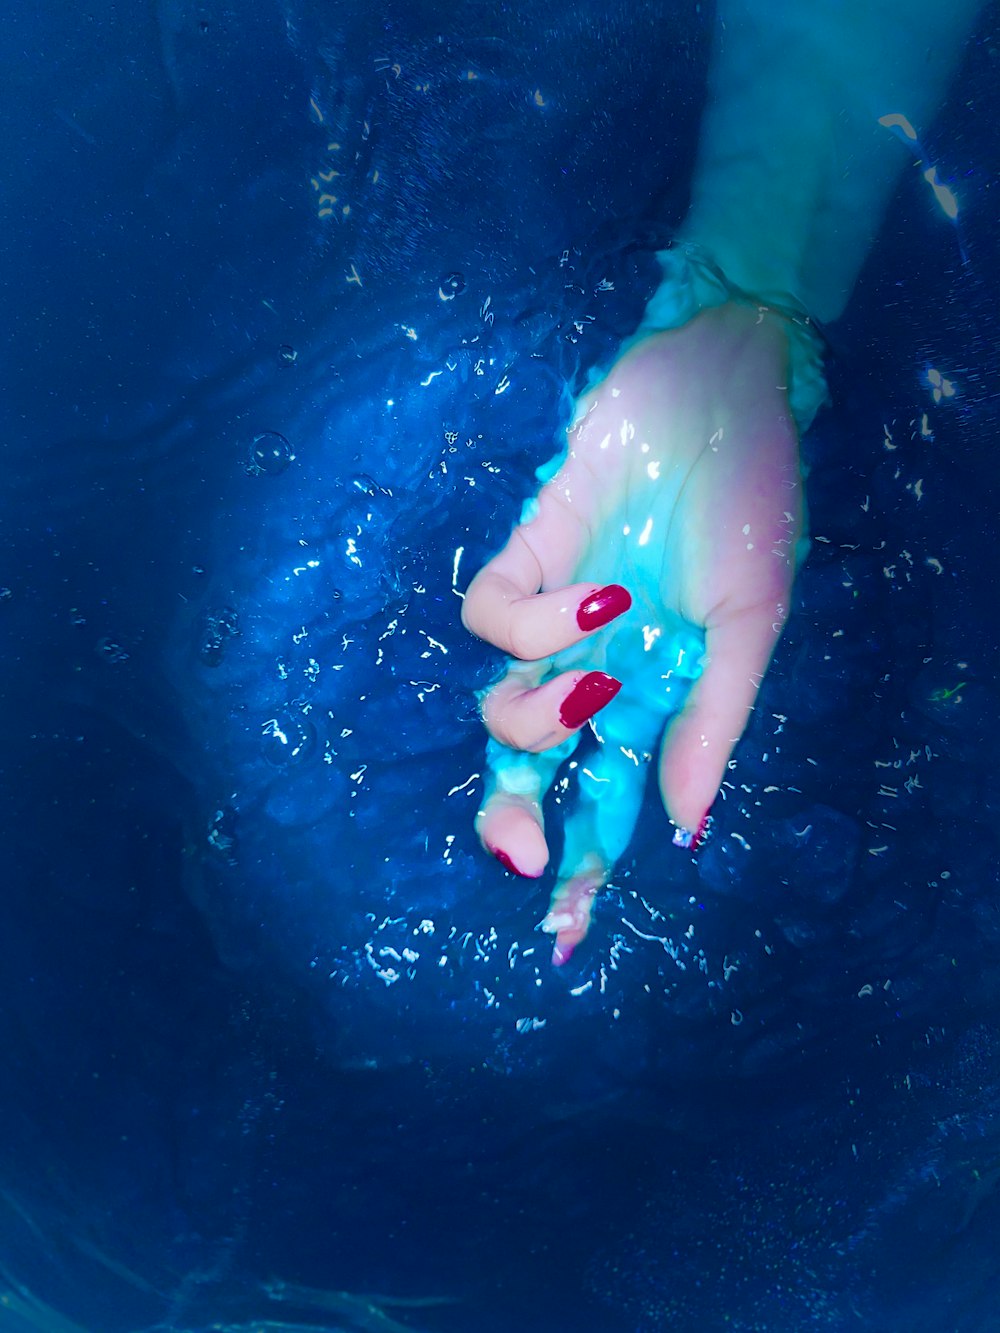 Die Hand einer Person im Wasser mit rotem Nagellack